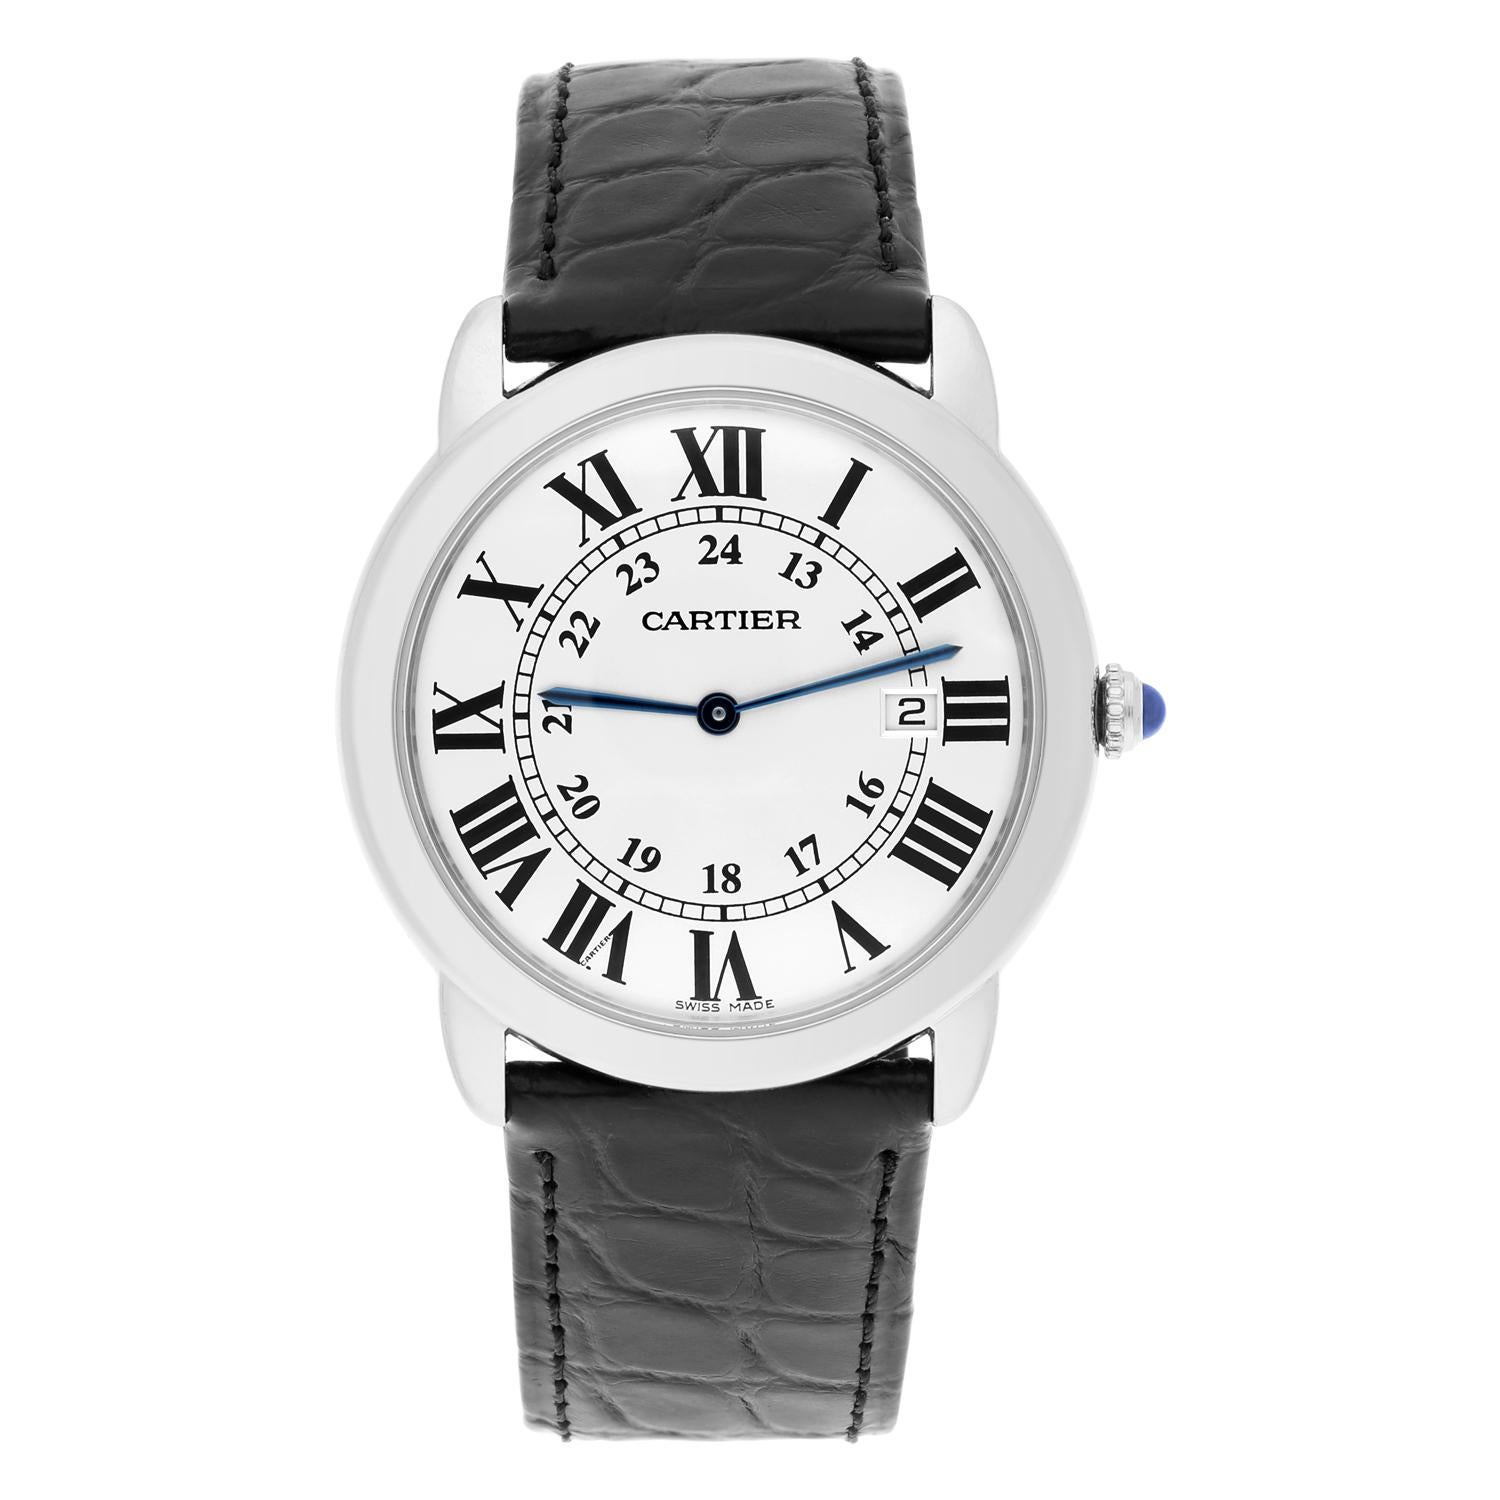 Diese atemberaubende Cartier Ronde de Cartier Armbanduhr ist ein wahrer Luxus-Zeitmesser. Mit ihrem schlichten silbernen Zifferblatt mit eleganten römischen Ziffern und der glatten Lünette in einem passenden Silberton strahlt diese Uhr Klasse und